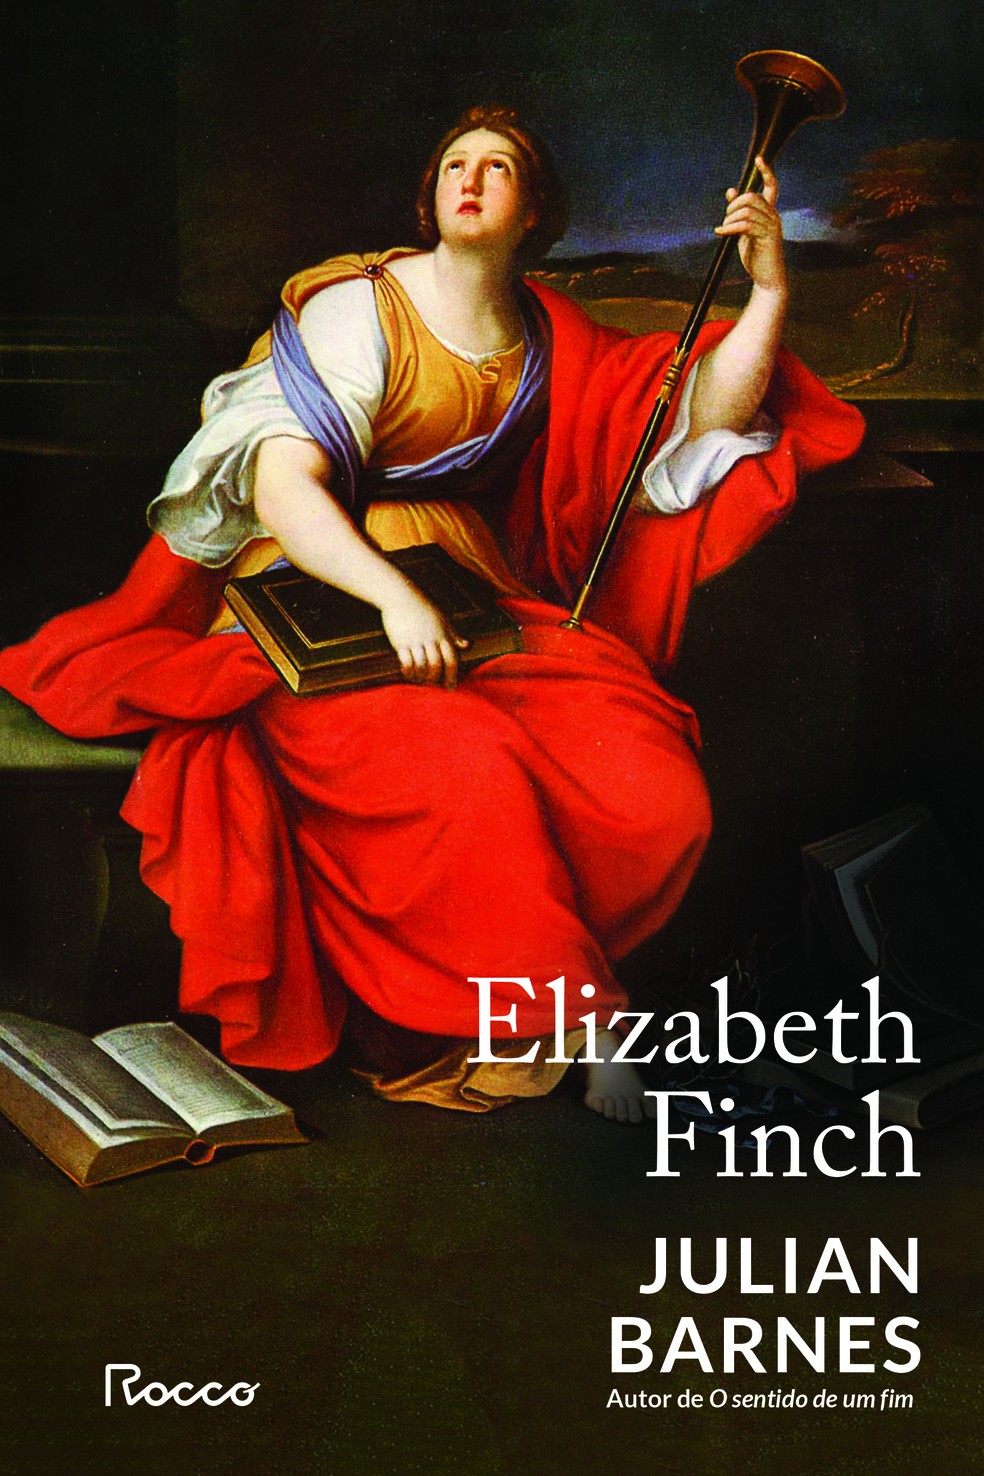 Capa de "Elizabeth Finch", novo romance do escritor britânico Julian Barnes, publicado pela Rocco — Foto: Reprodução